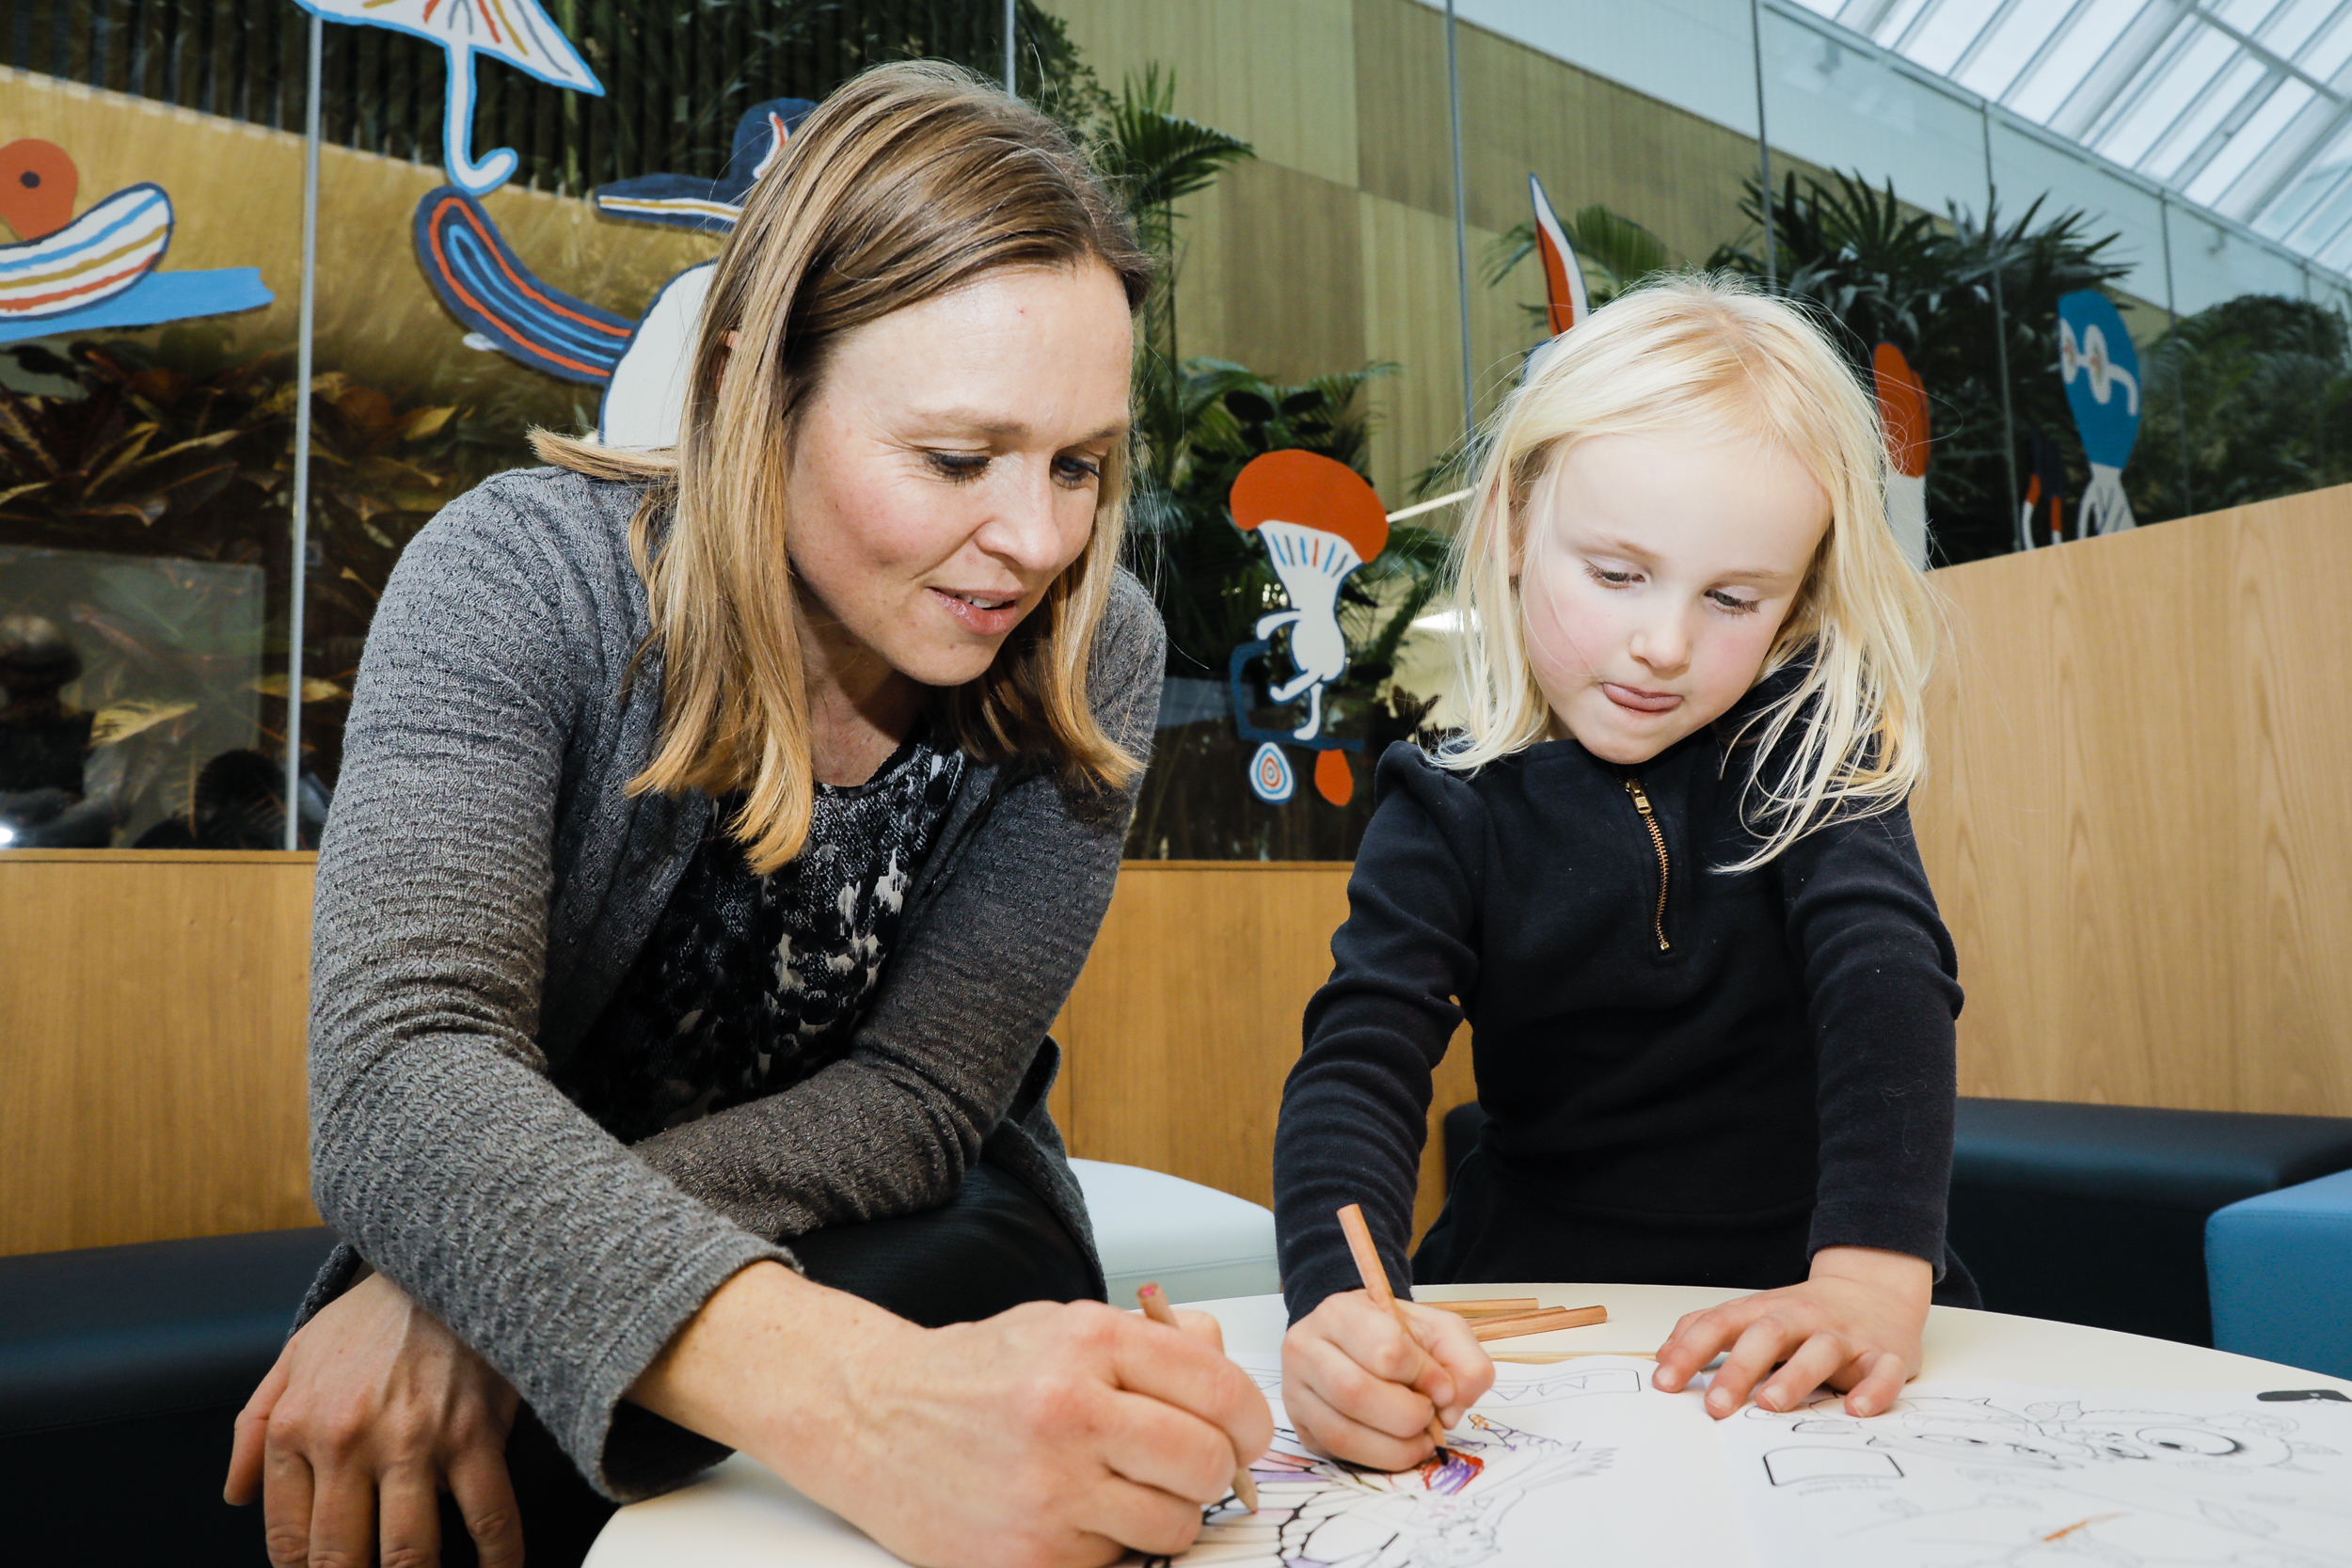 En særlig del af venteområdet i Dansk Center for Partikelterapi er indrettet til børn. Foto: John Kristensen